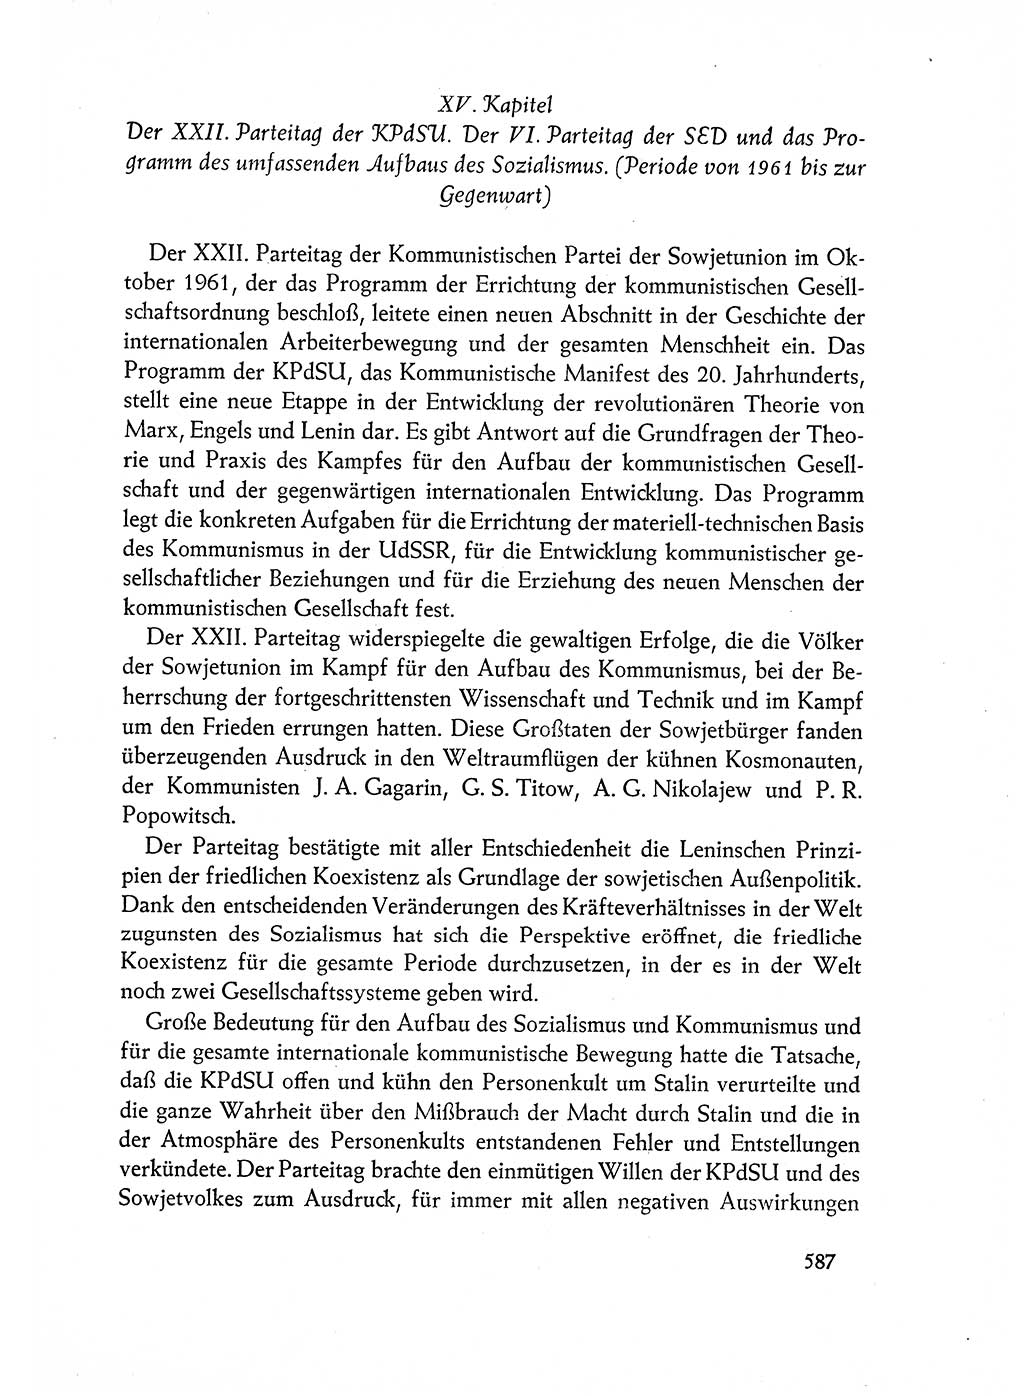 Dokumente der Sozialistischen Einheitspartei Deutschlands (SED) [Deutsche Demokratische Republik (DDR)] 1962-1963, Seite 587 (Dok. SED DDR 1962-1963, S. 587)